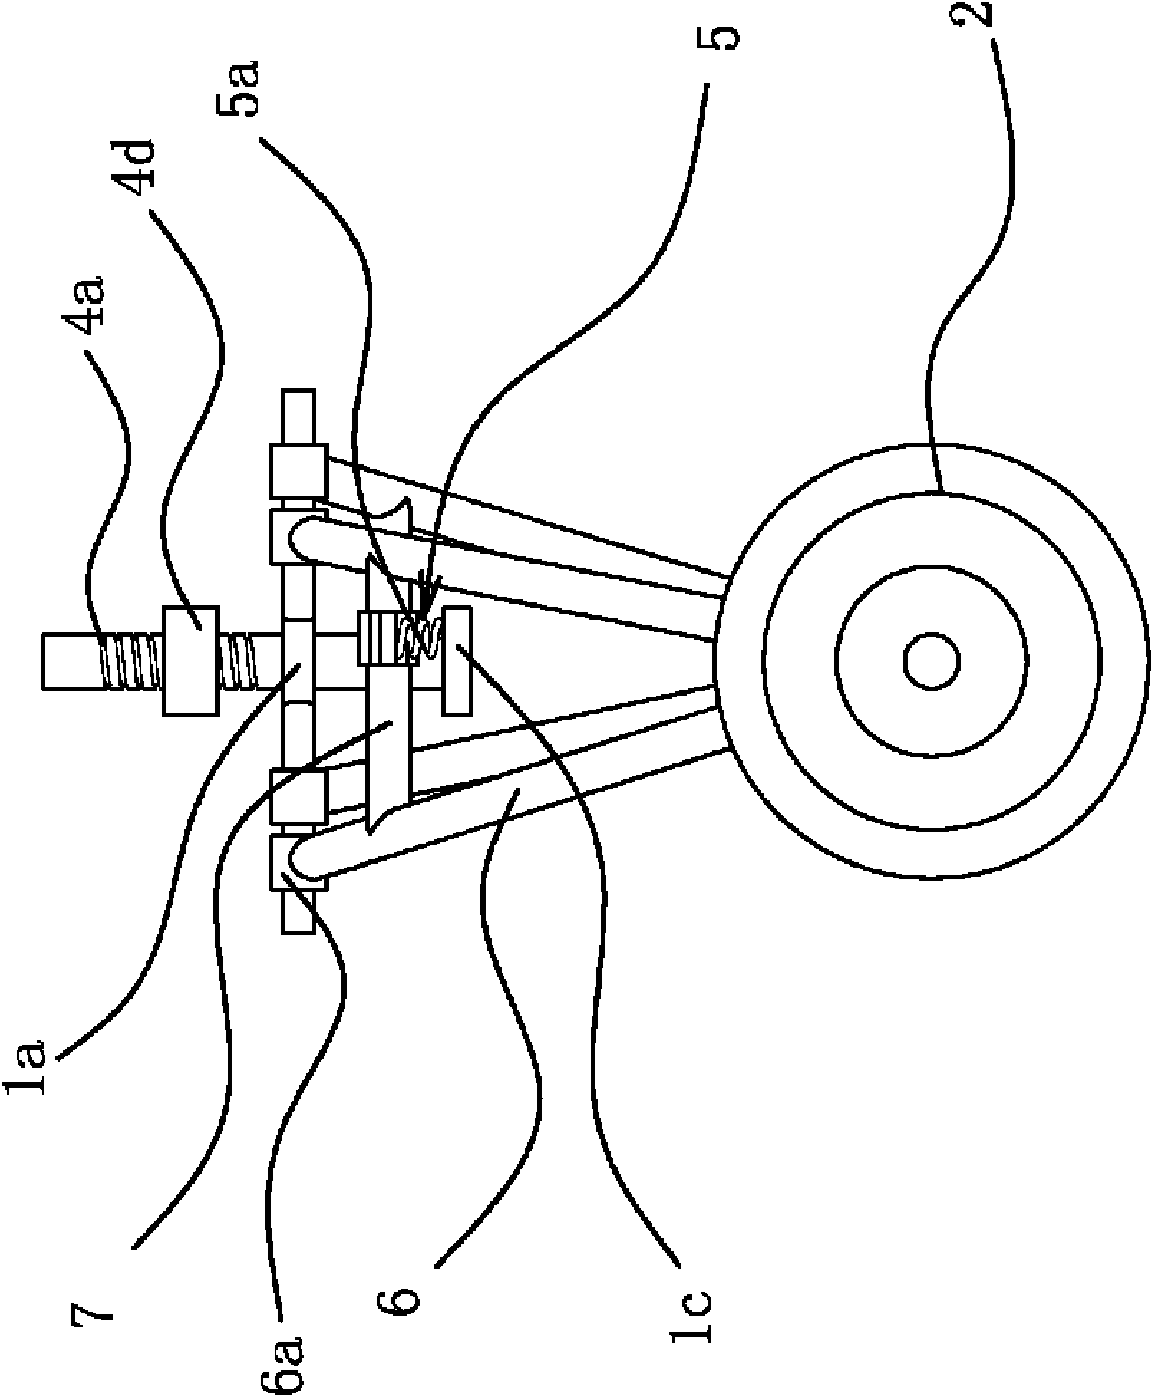 Auxiliary wheel mechanism of double-body vehicle